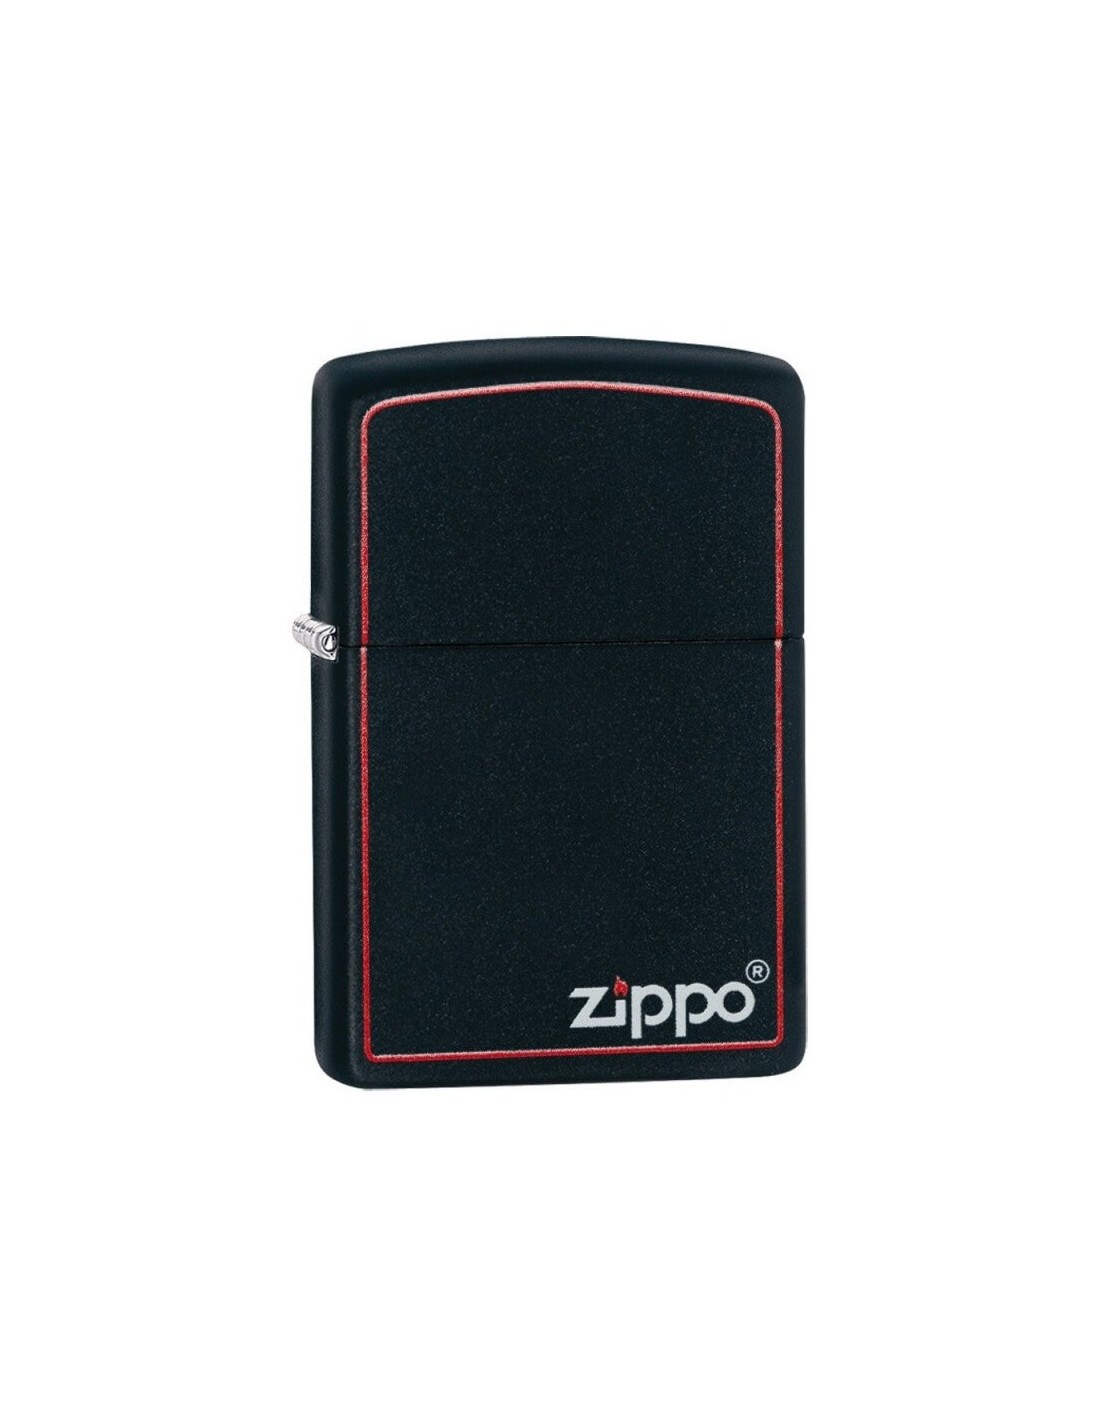 فندک زیپو Zippo 218ZB اصلی